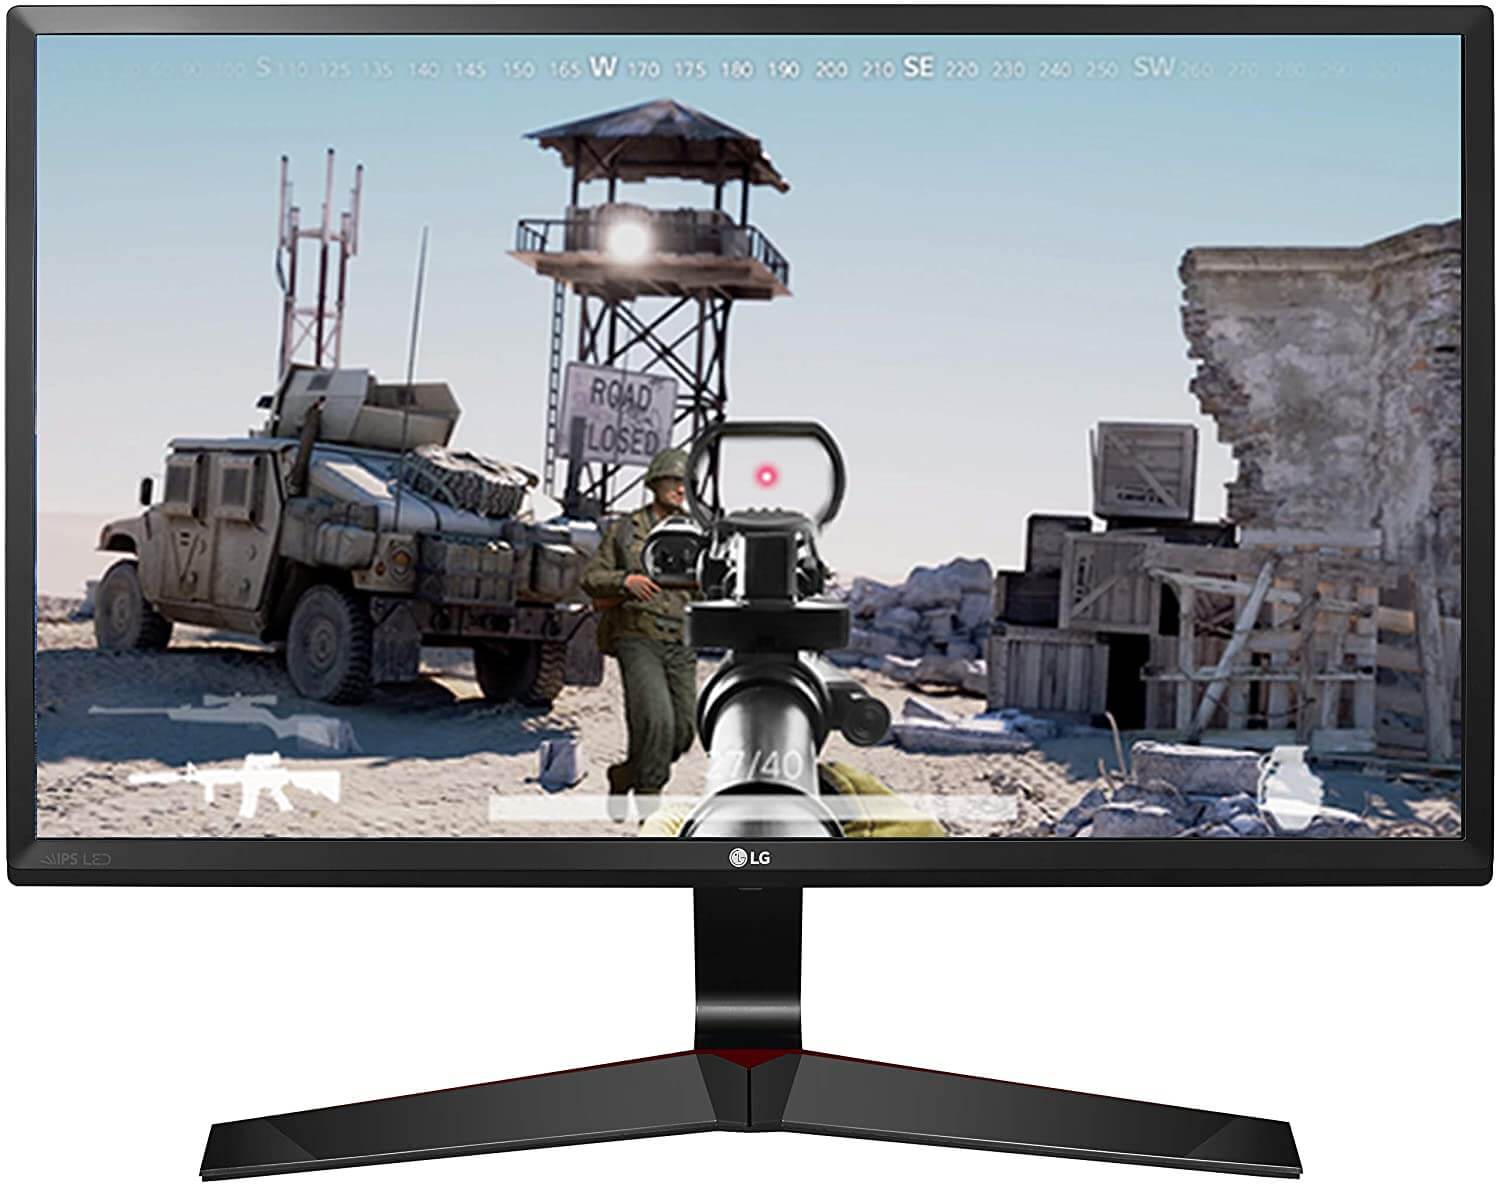 LG 24-inch Gaming Monitor 24MP56G